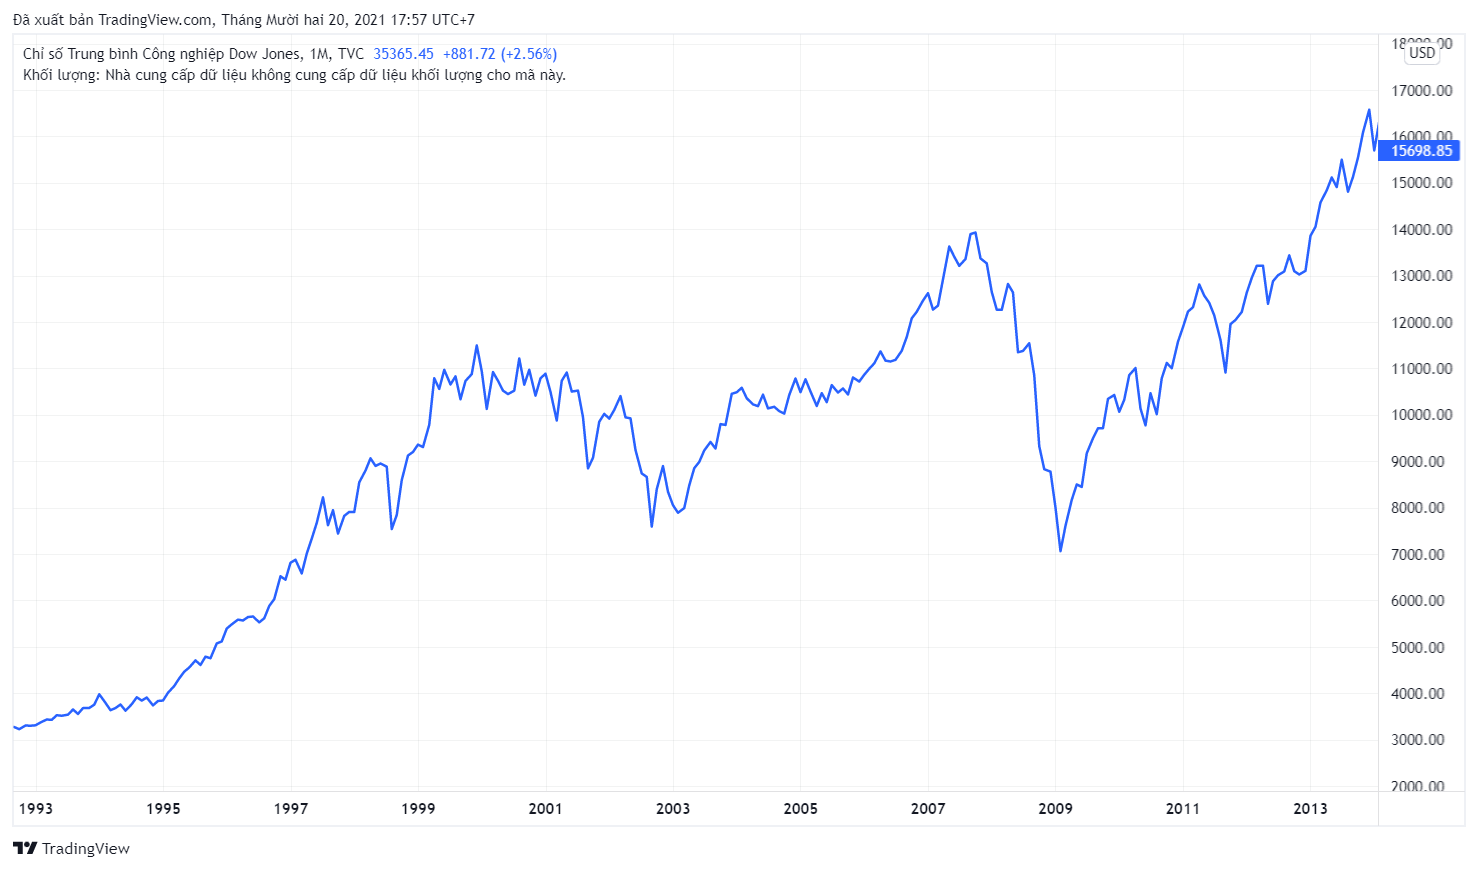 Chỉ số Dow Jones từ năm 1992 - 2013